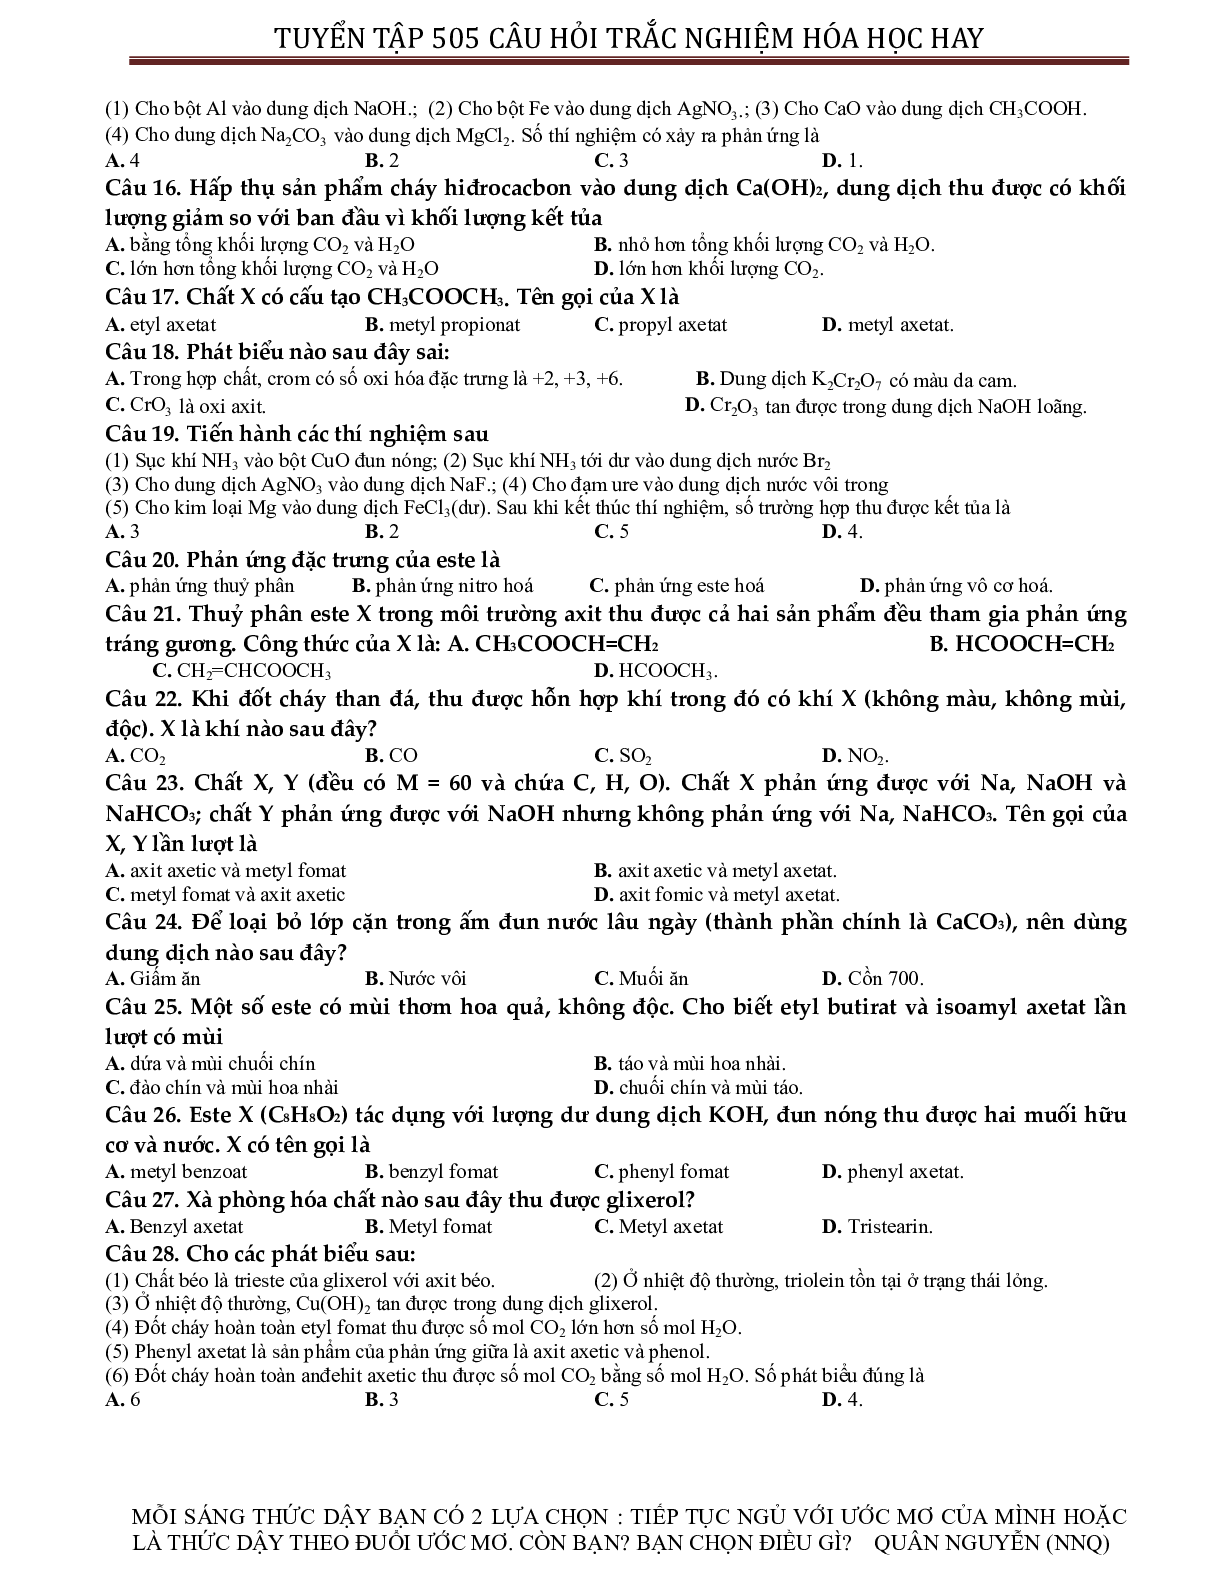 Tuyển chọn 505 câu hỏi lí thuyết trắc nghiệm hóa học 12 có đáp án, chọn lọc (trang 3)